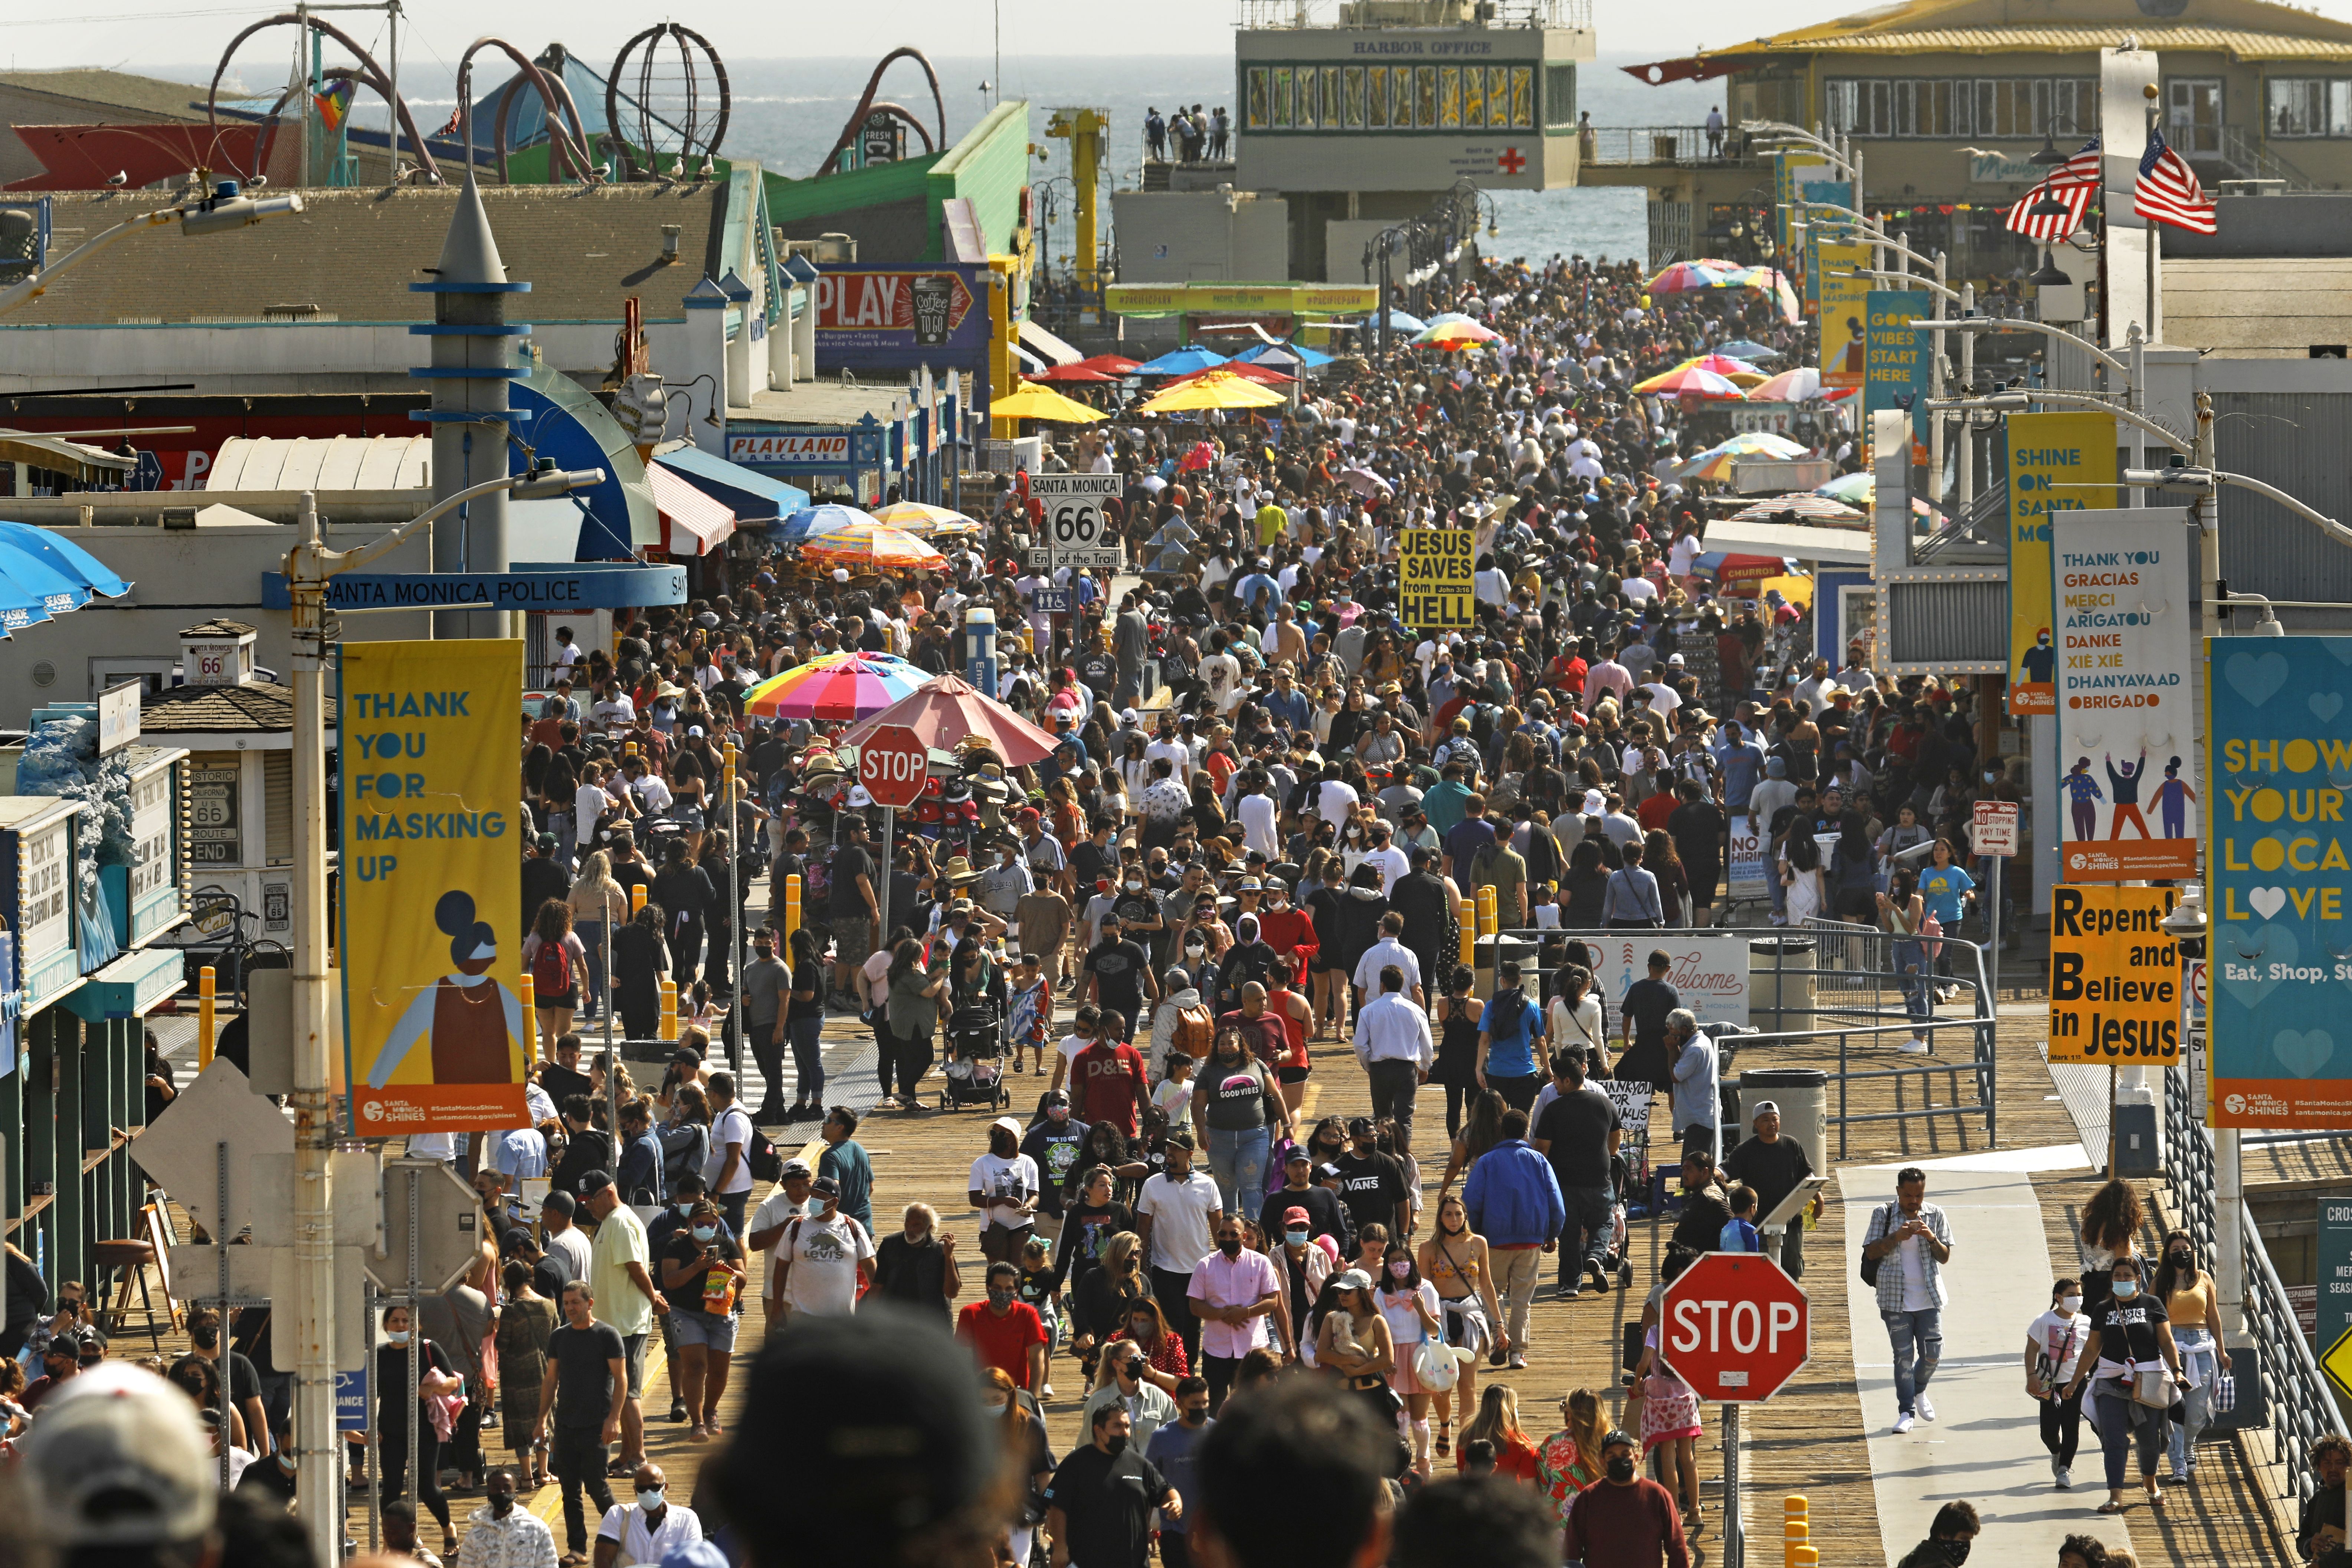 A crowd of people walk down a boardwalk